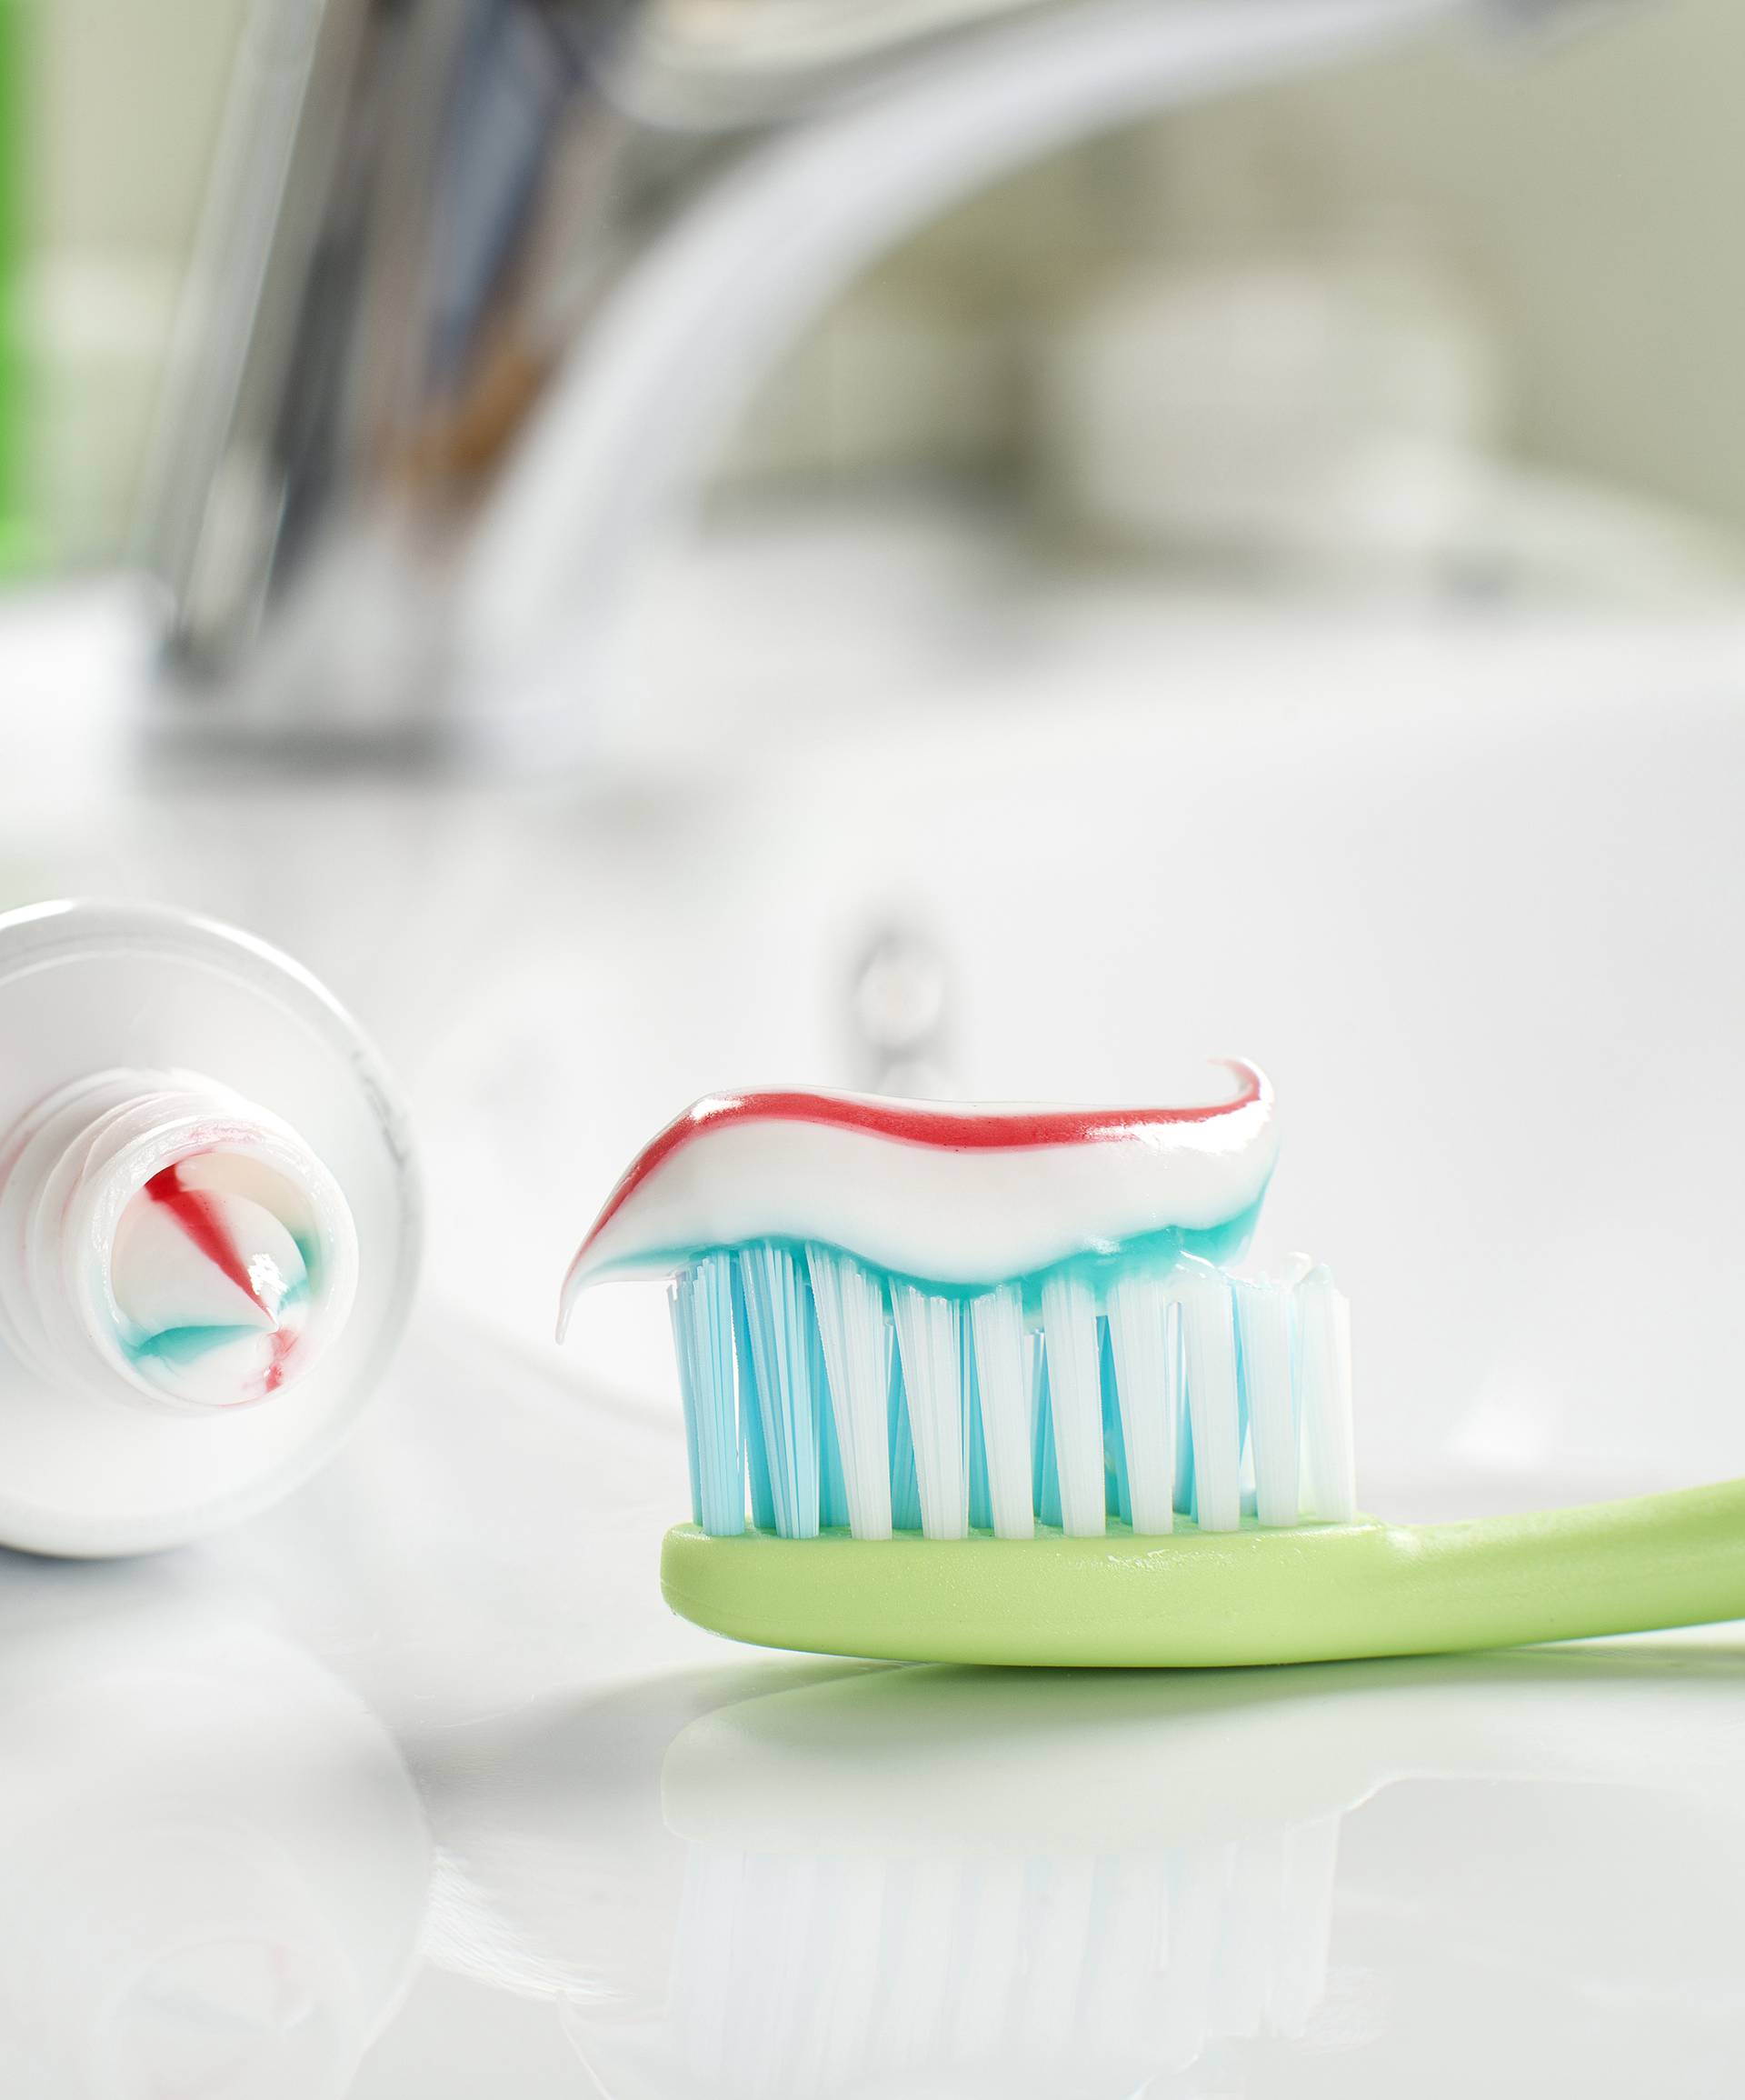 Saznajte što tri boje na zubnoj pasti znače i zašto su bitne...